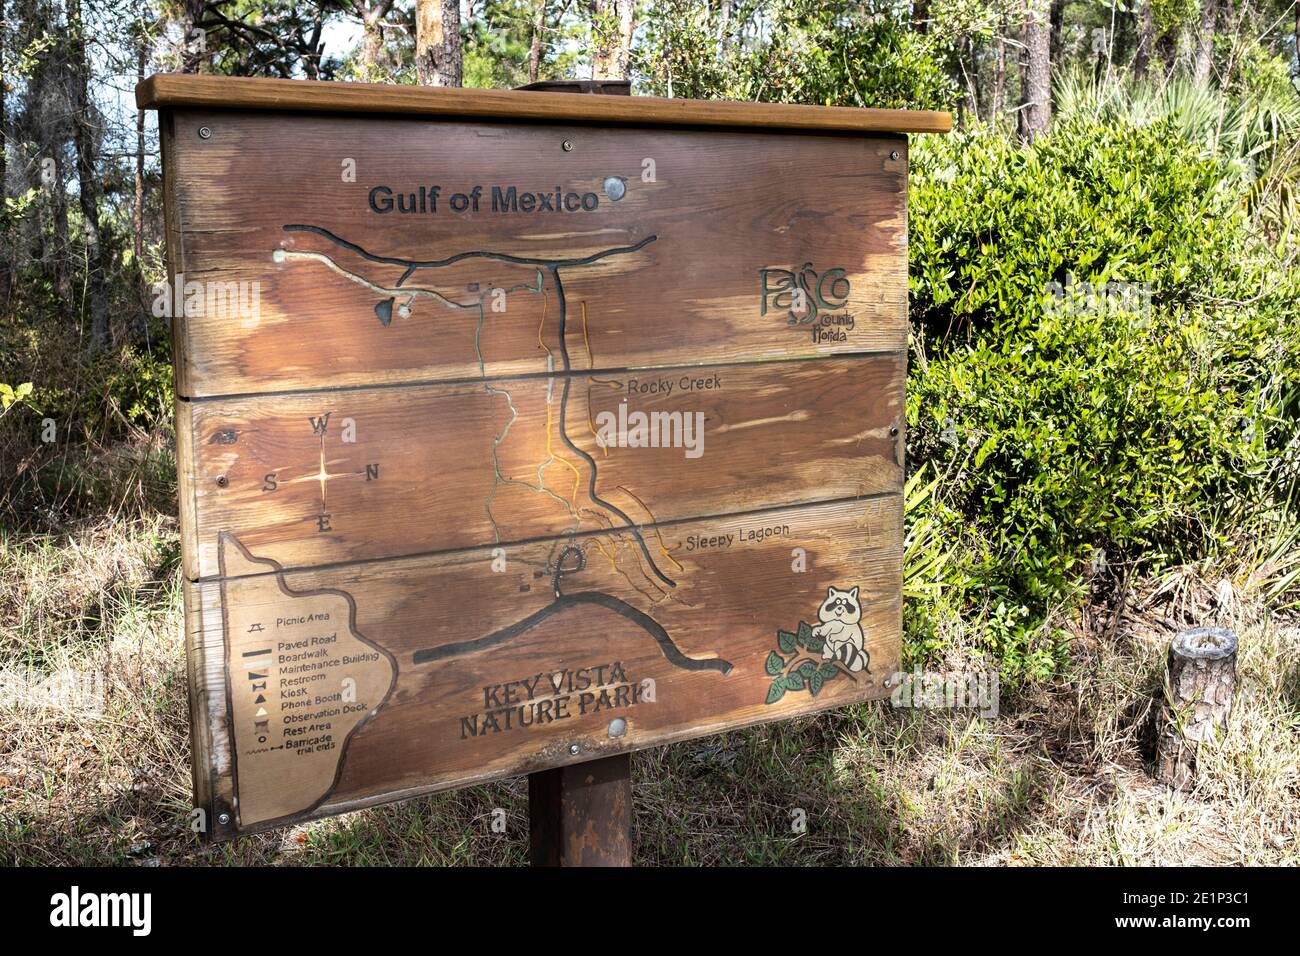 Trail Sign at Key Vista Nature Park - Holiday, Florida Stock Photo